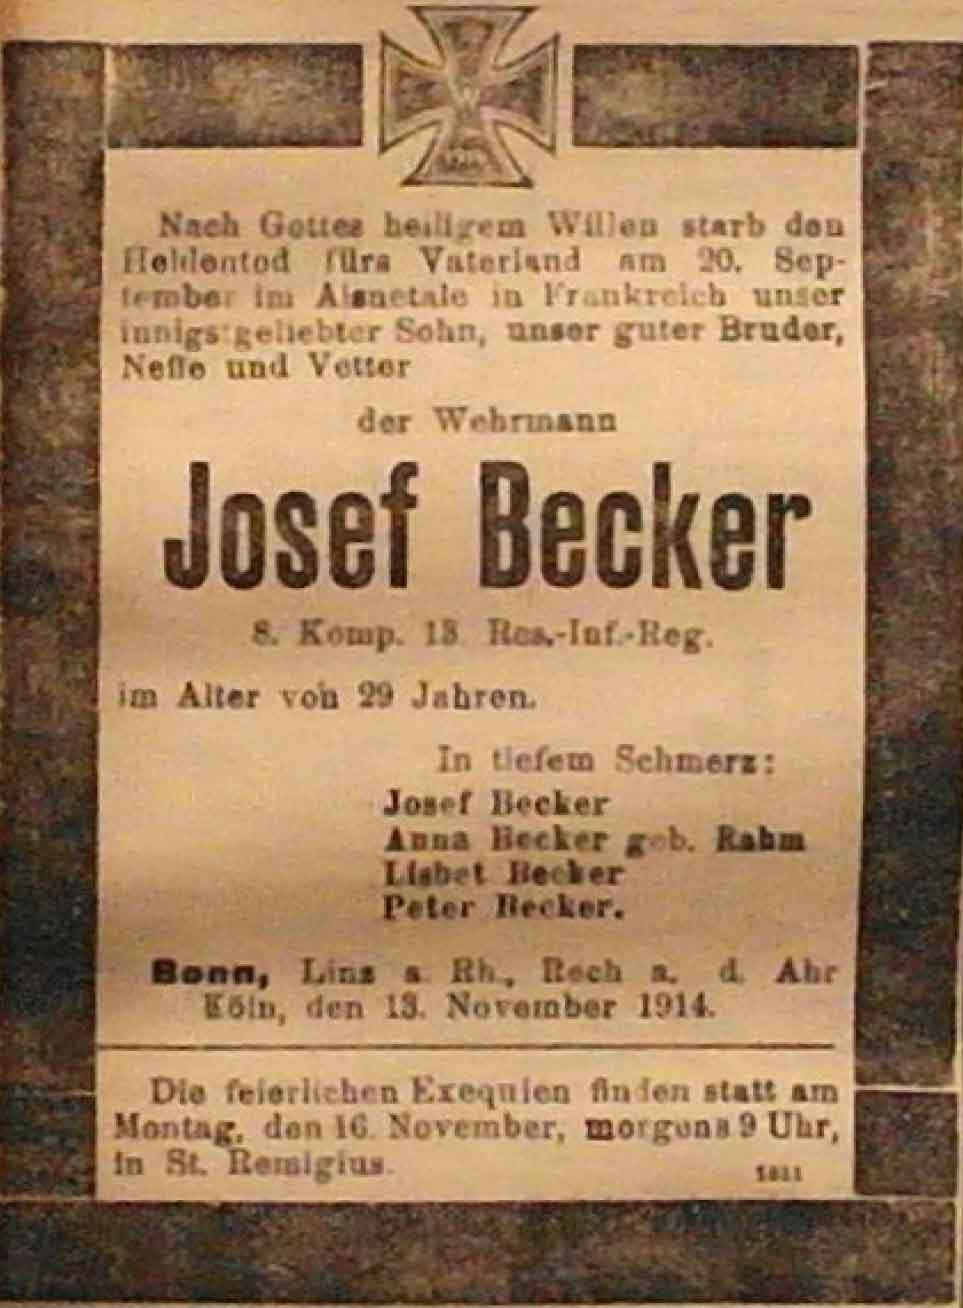 Anzeige in der Deutschen Reichs-Zeitung vom 13. November 1914